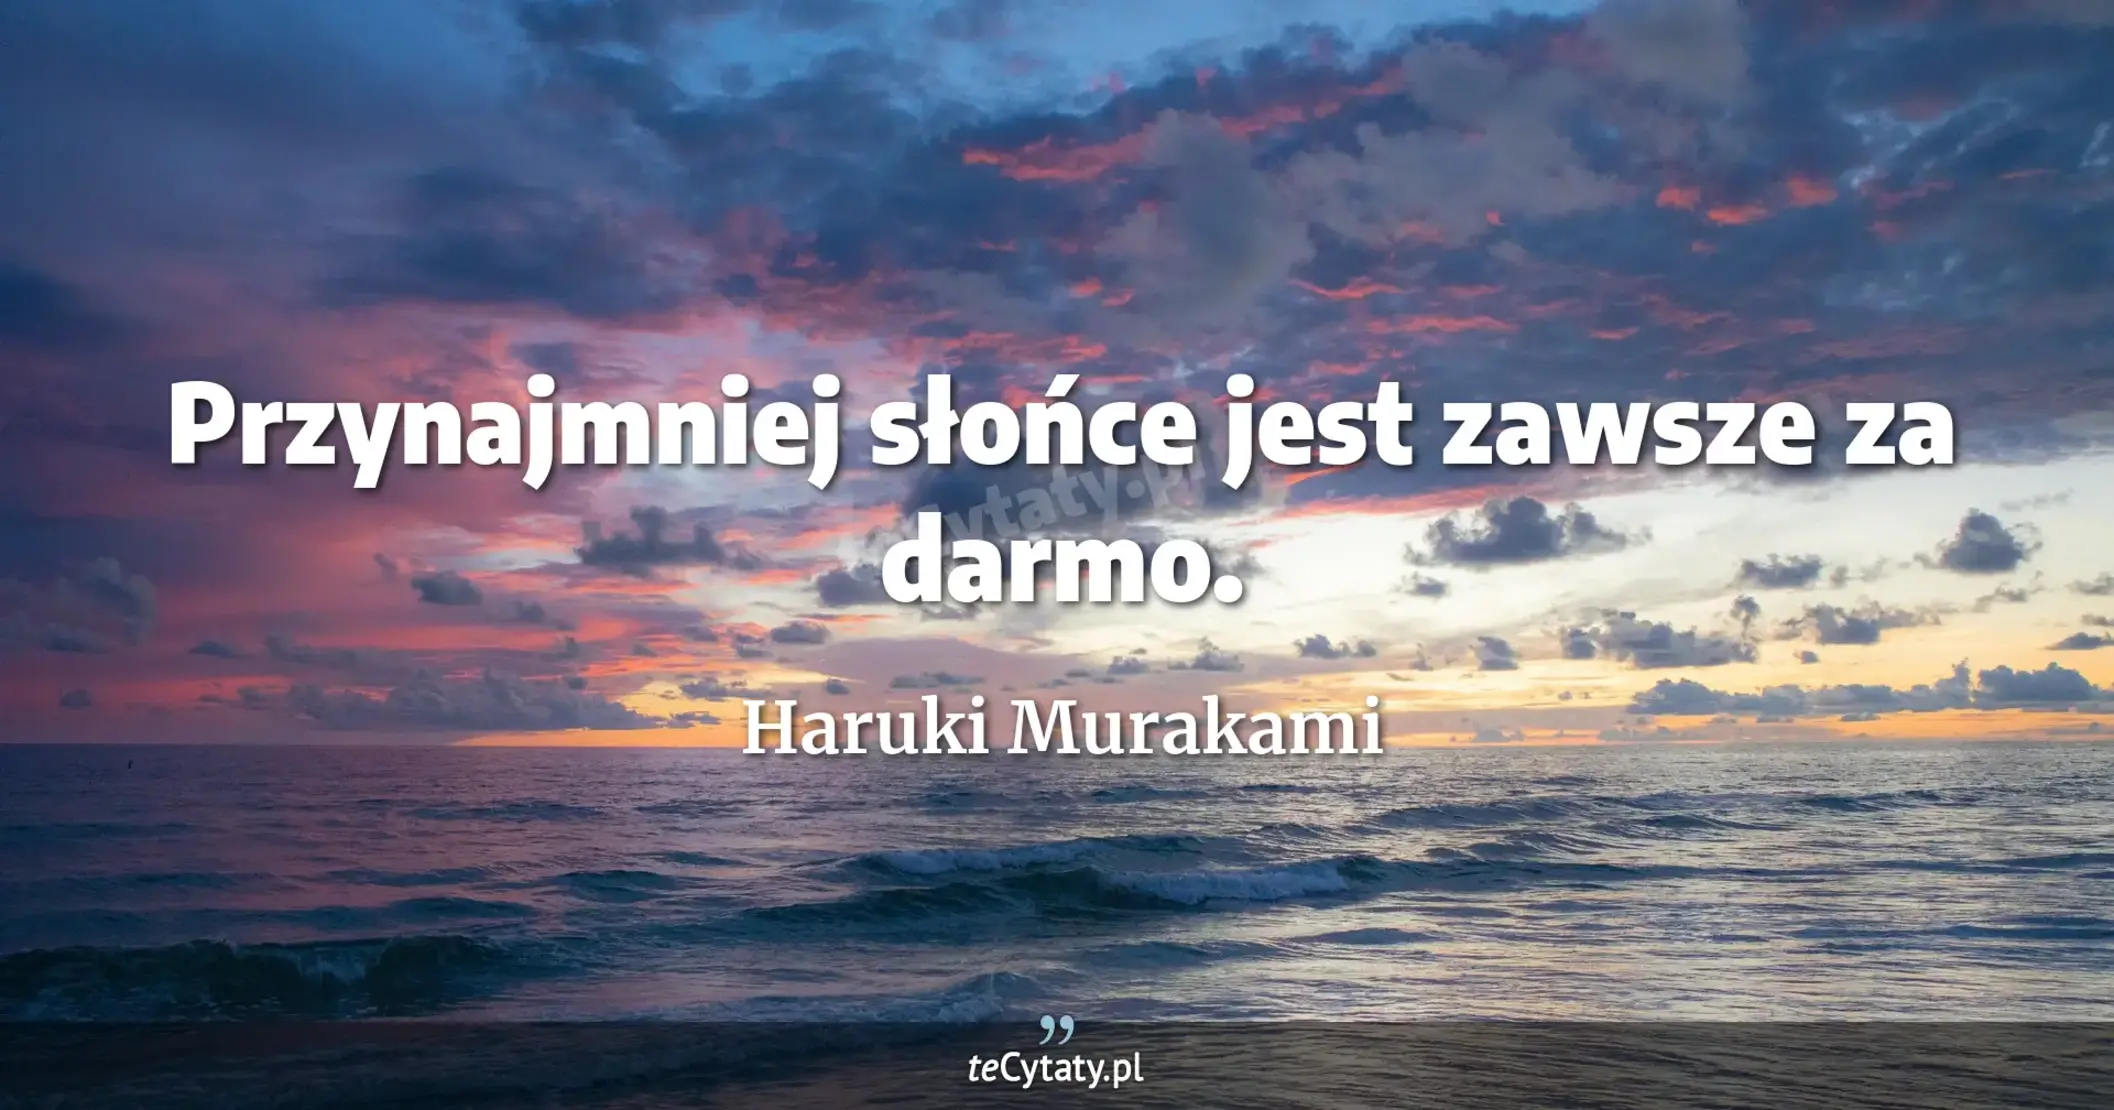 Przynajmniej słońce jest zawsze za darmo. - Haruki Murakami